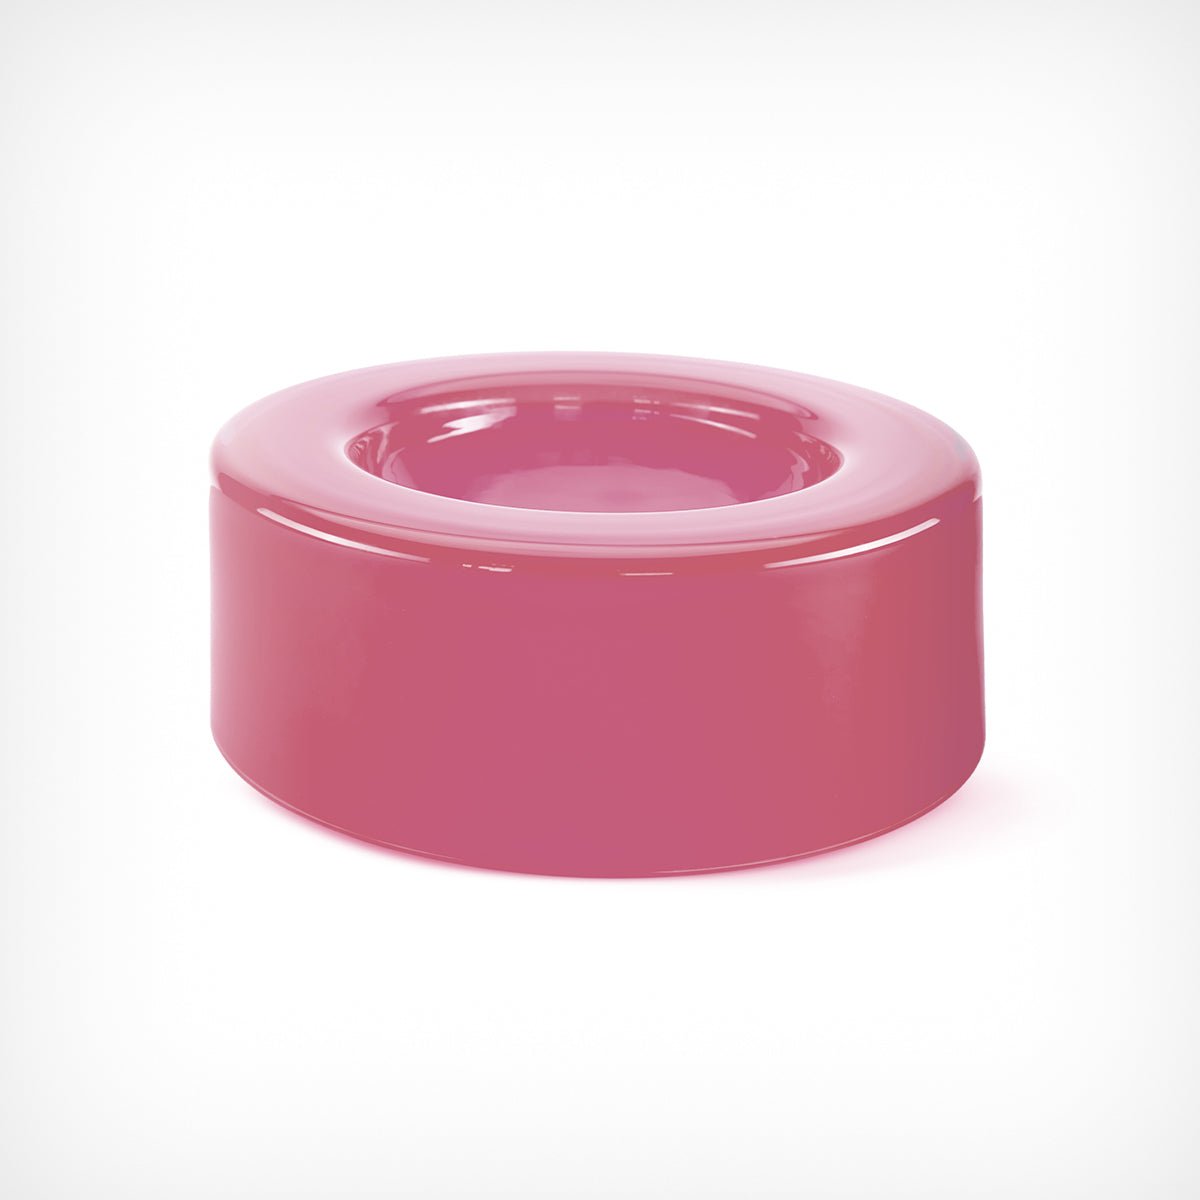 Schale „WET Bowl” Pink Ursula Futura – diesellerie.com